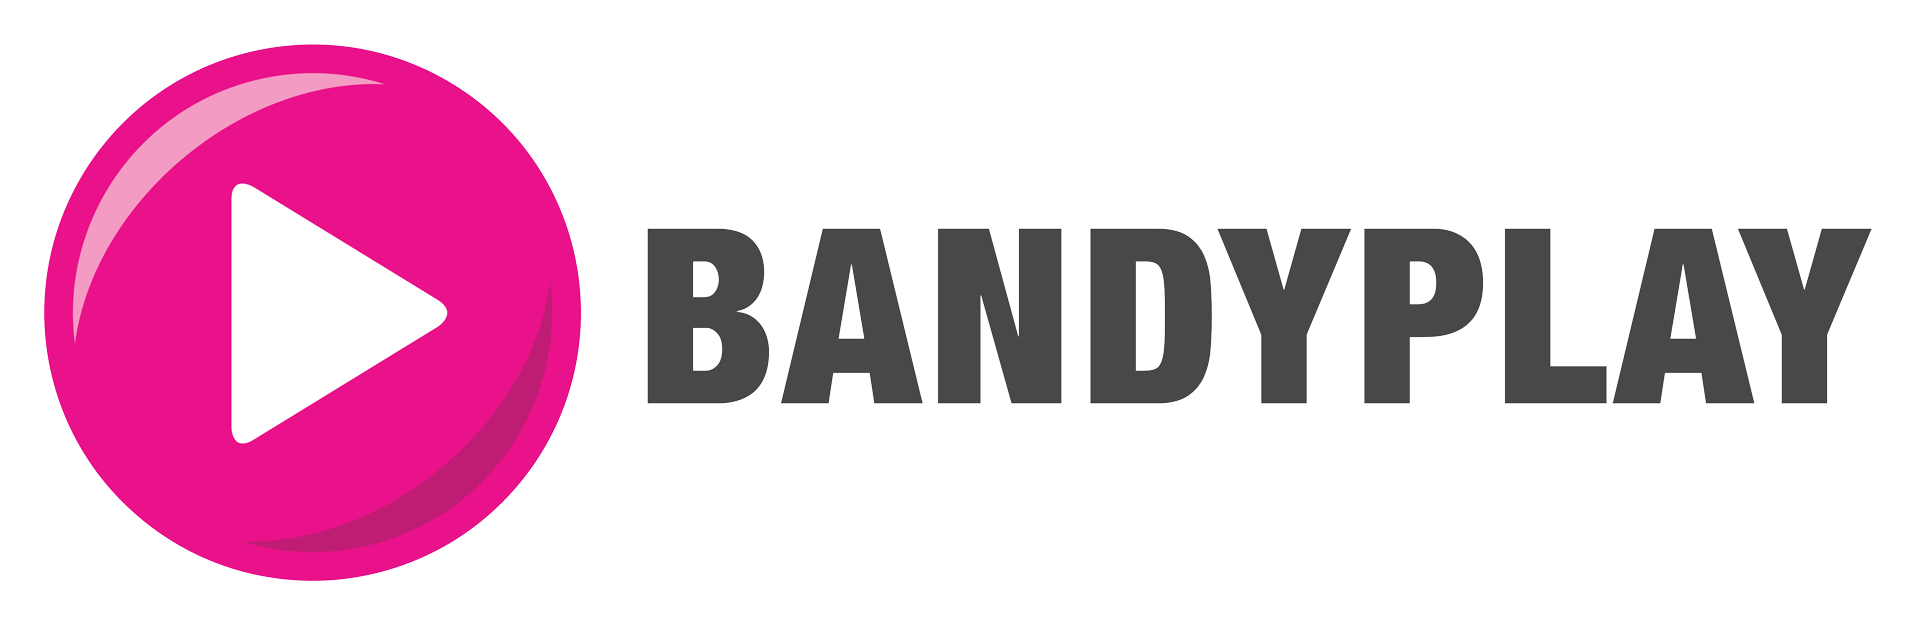 Bandyplay – Streaming av bandy på nätet